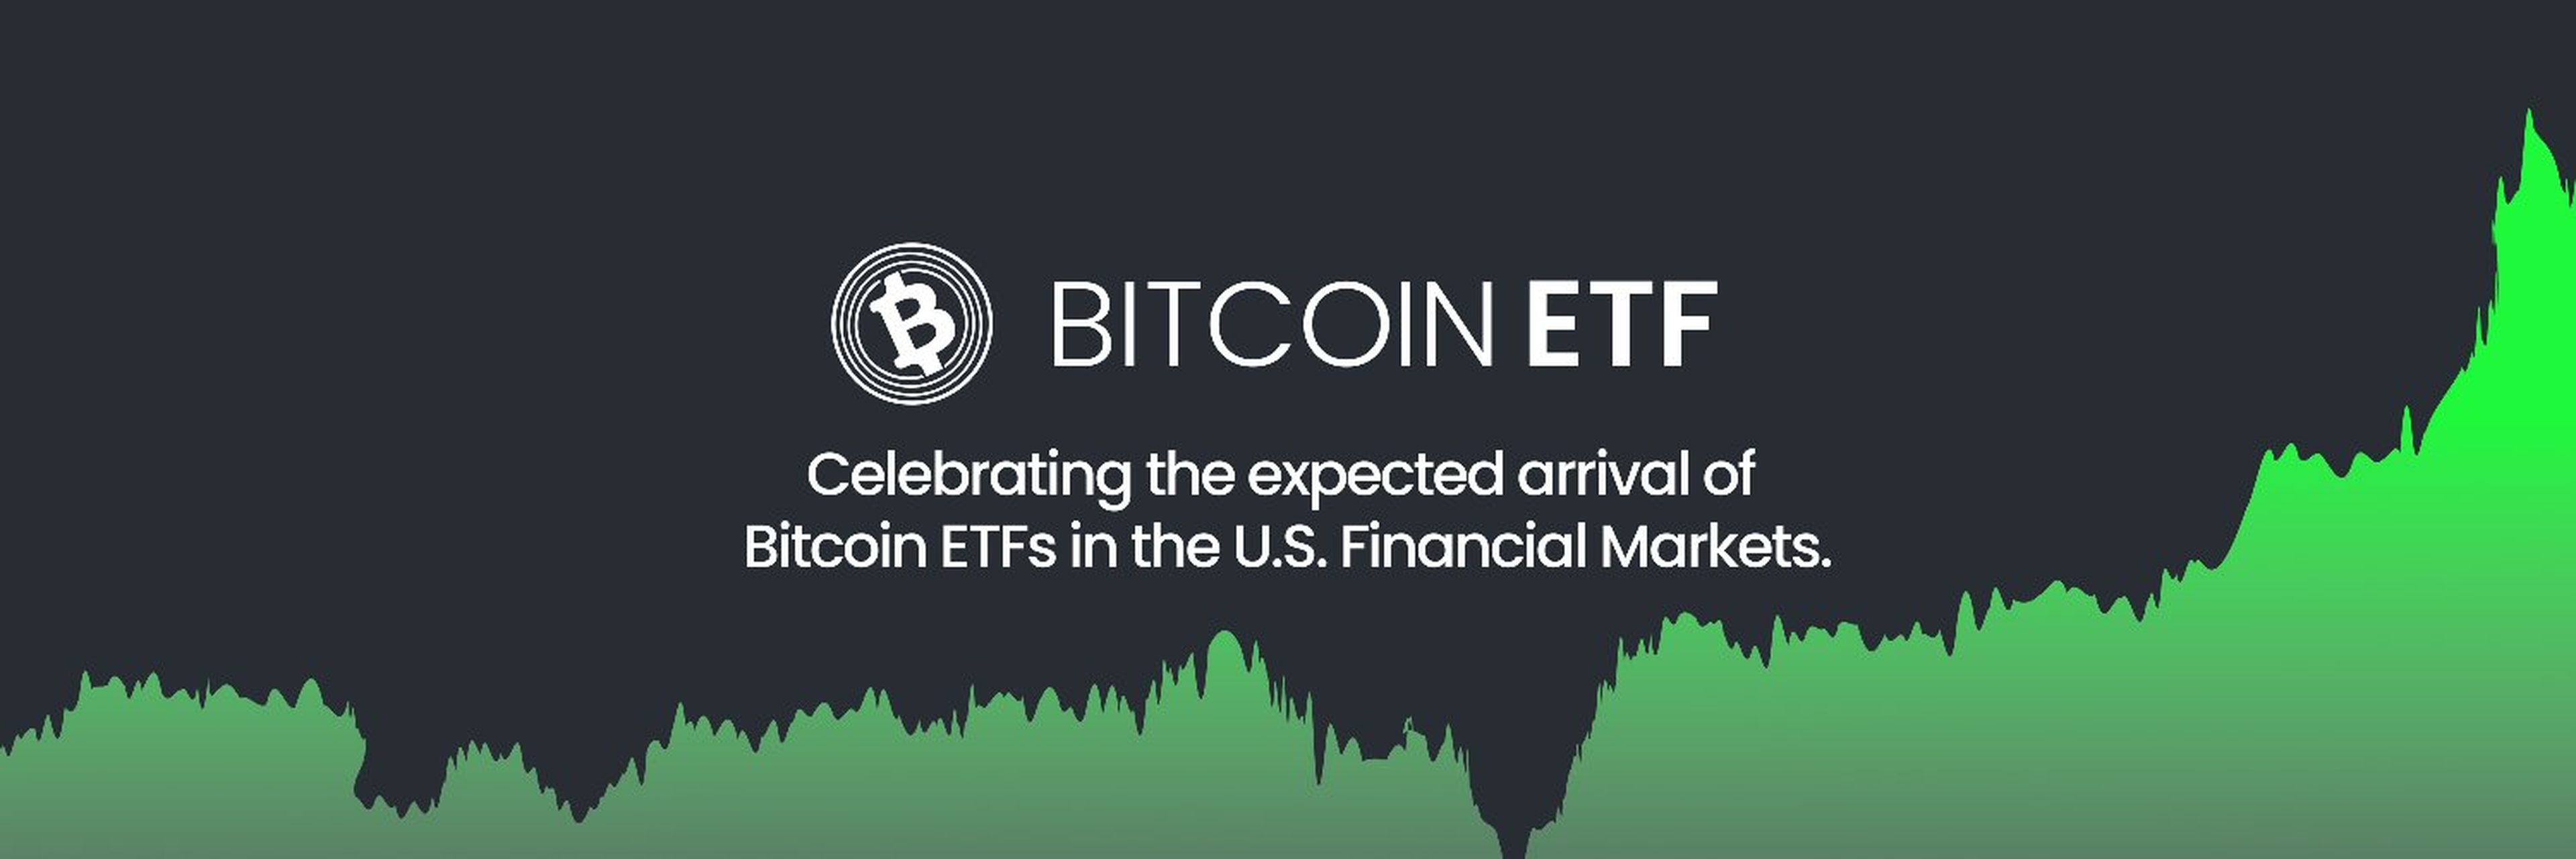 Logo de Bitcoin ETF.